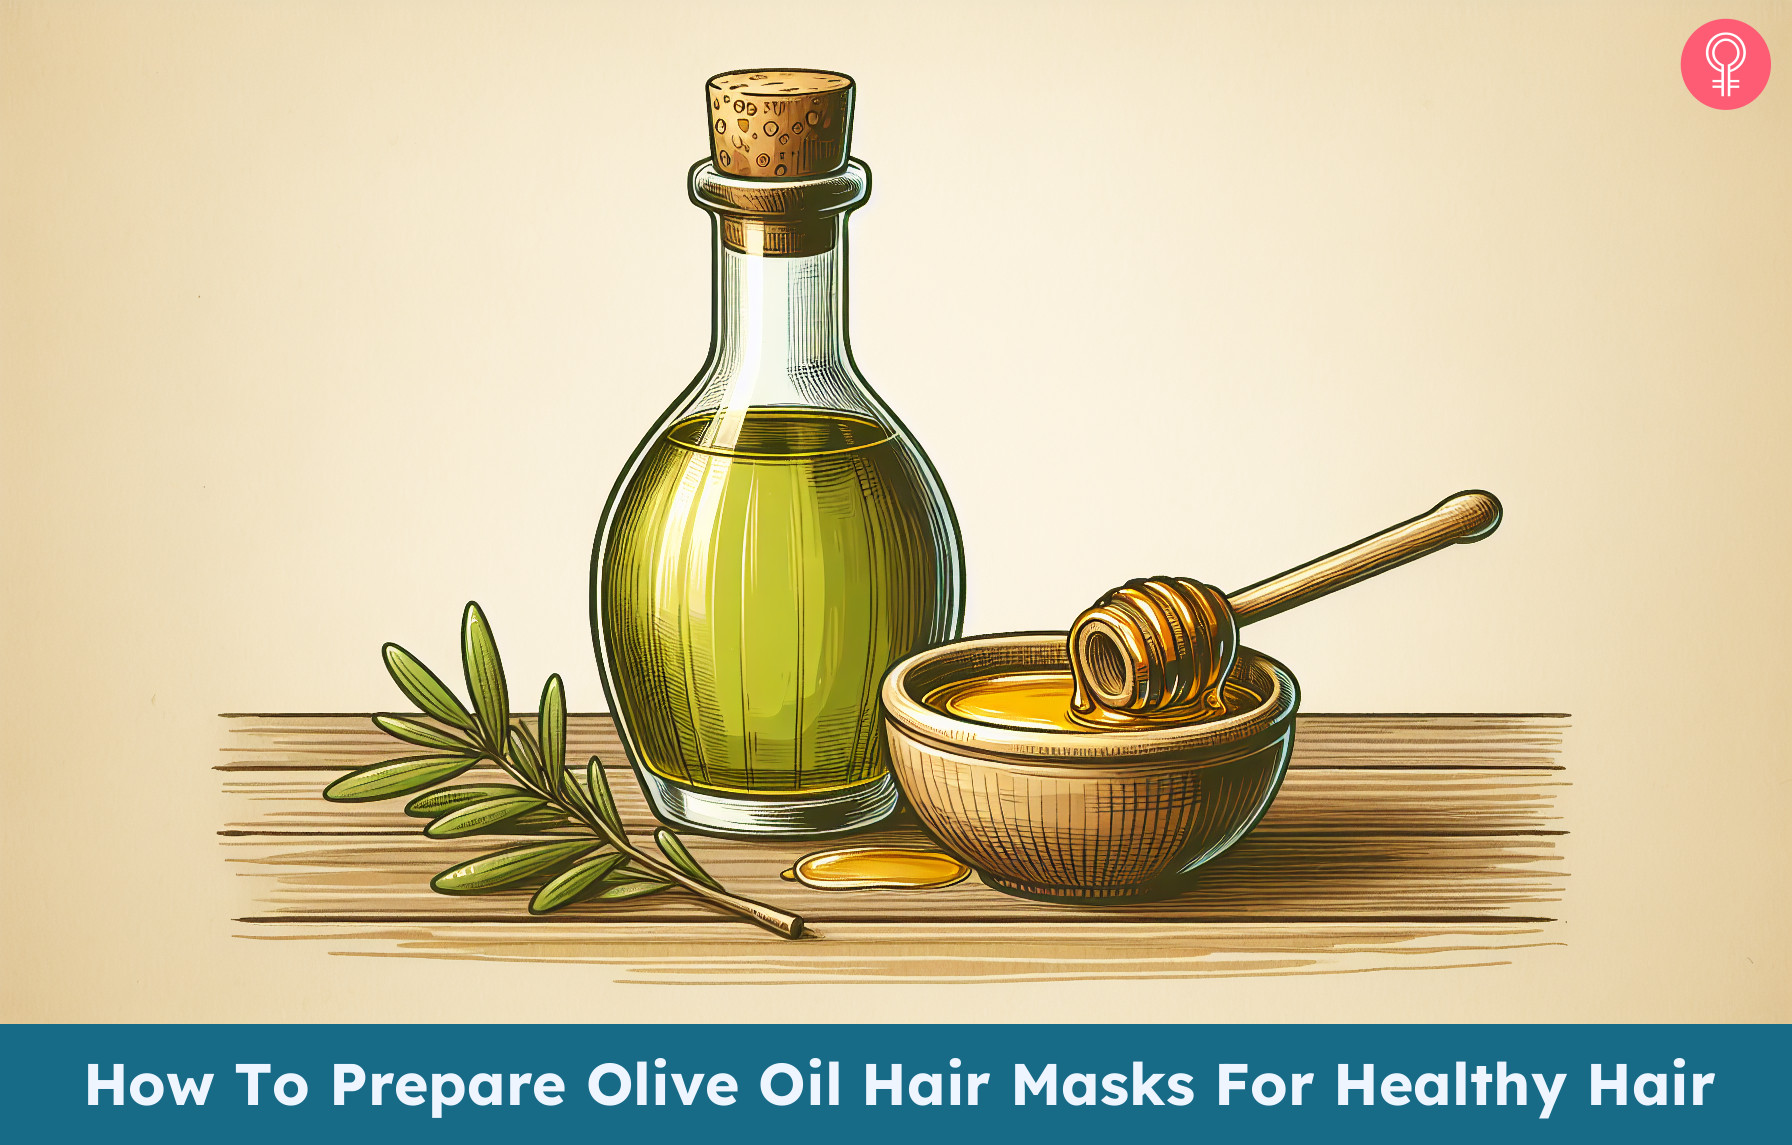 Olive Oil Hair Mask